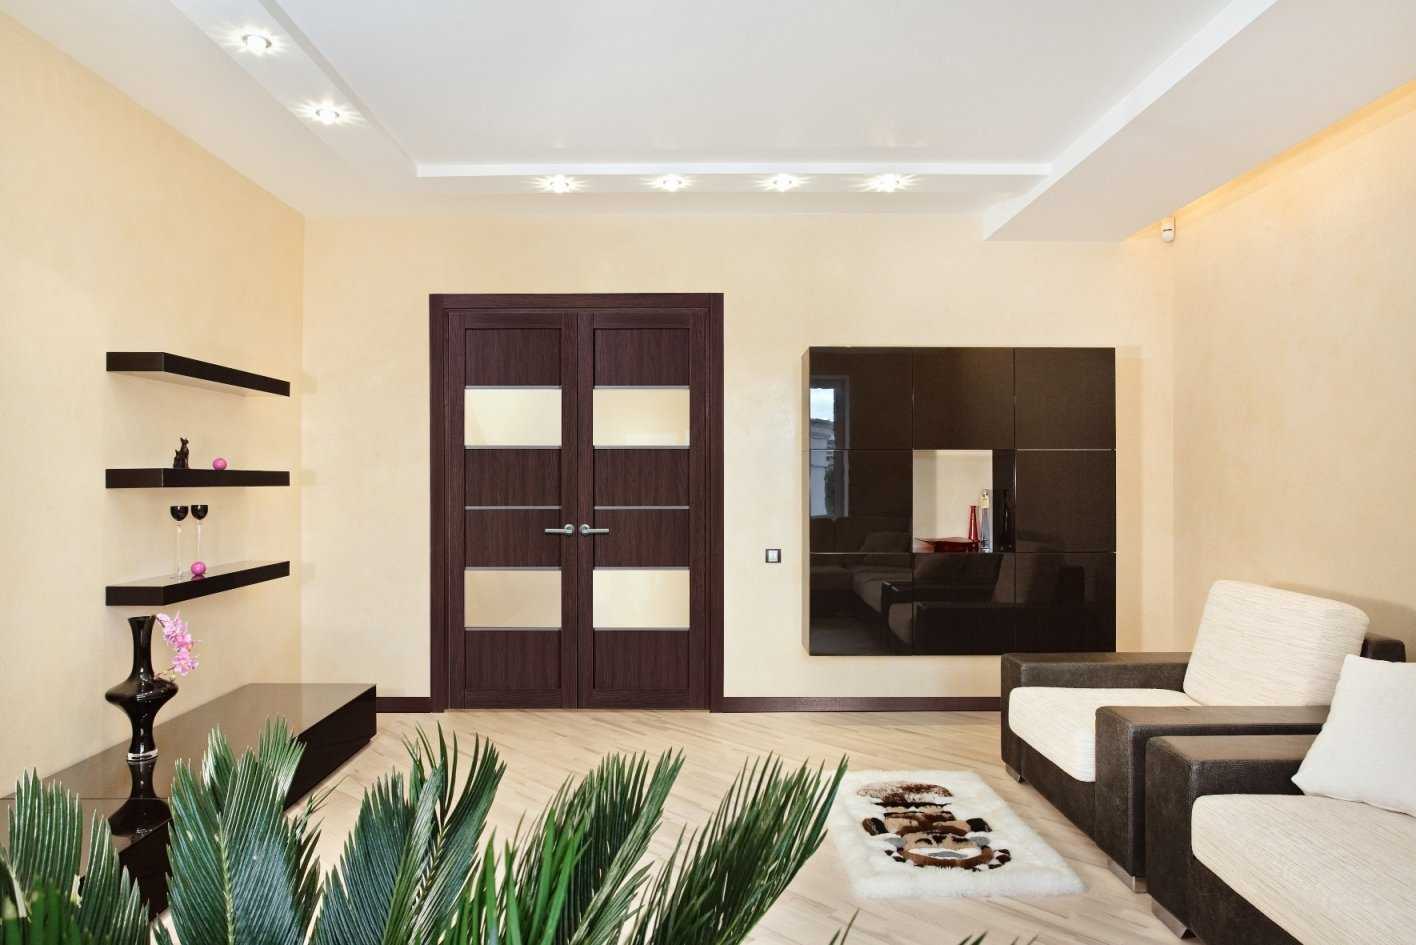 Цвета межкомнатных дверей : рекомендации дизайнера по выбору и сочетание со стенами, полом, мебелью